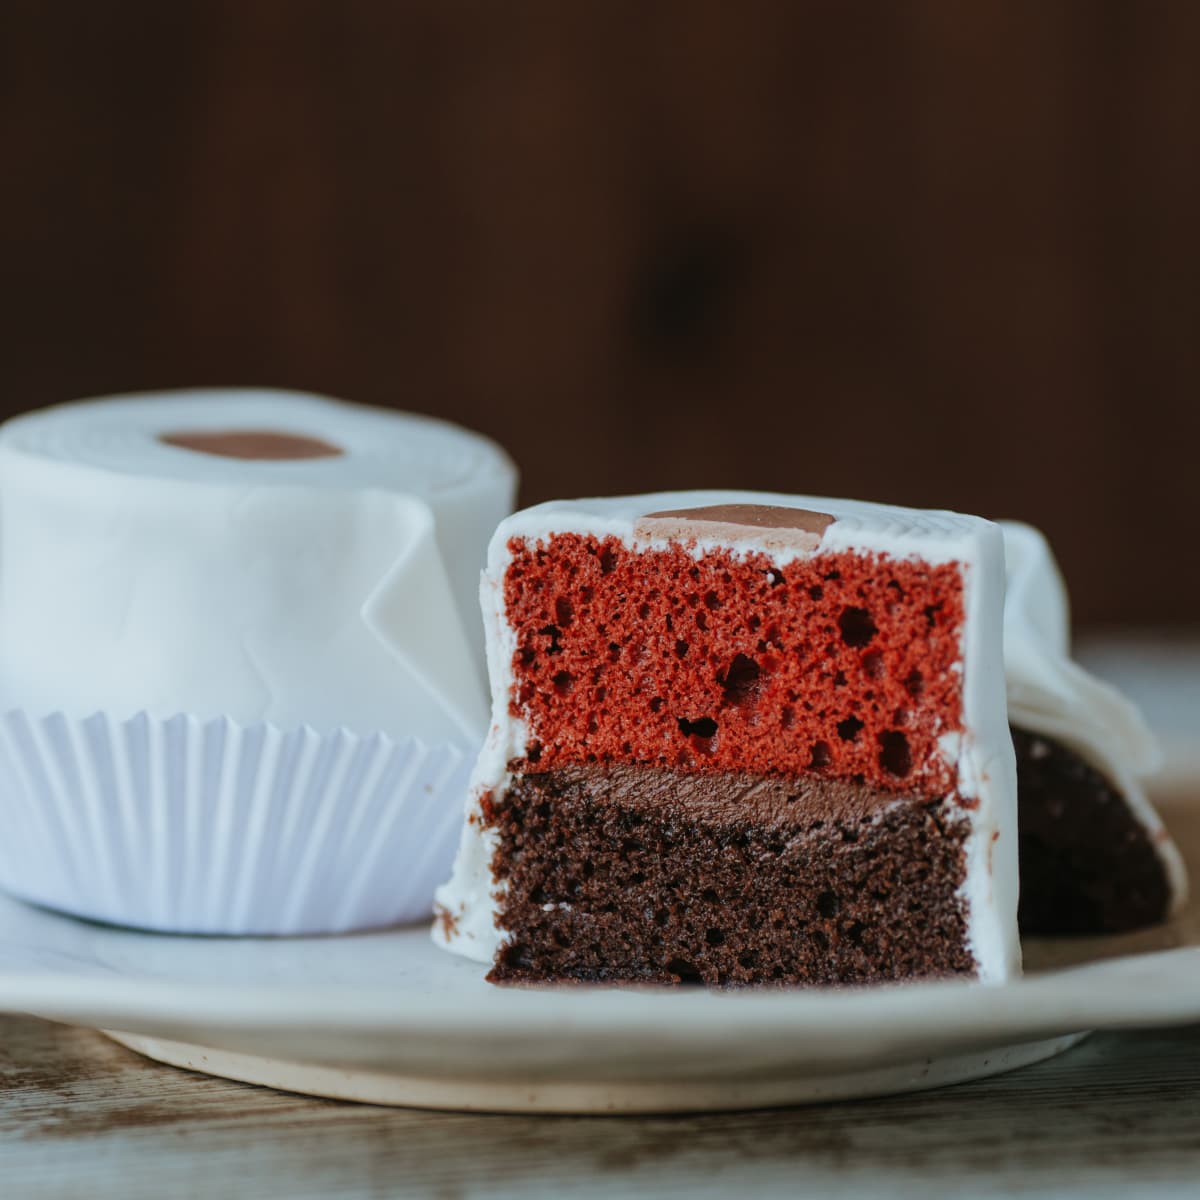 Amy Bakers Cakes - Red velvet toilet cake 😂 | Facebook